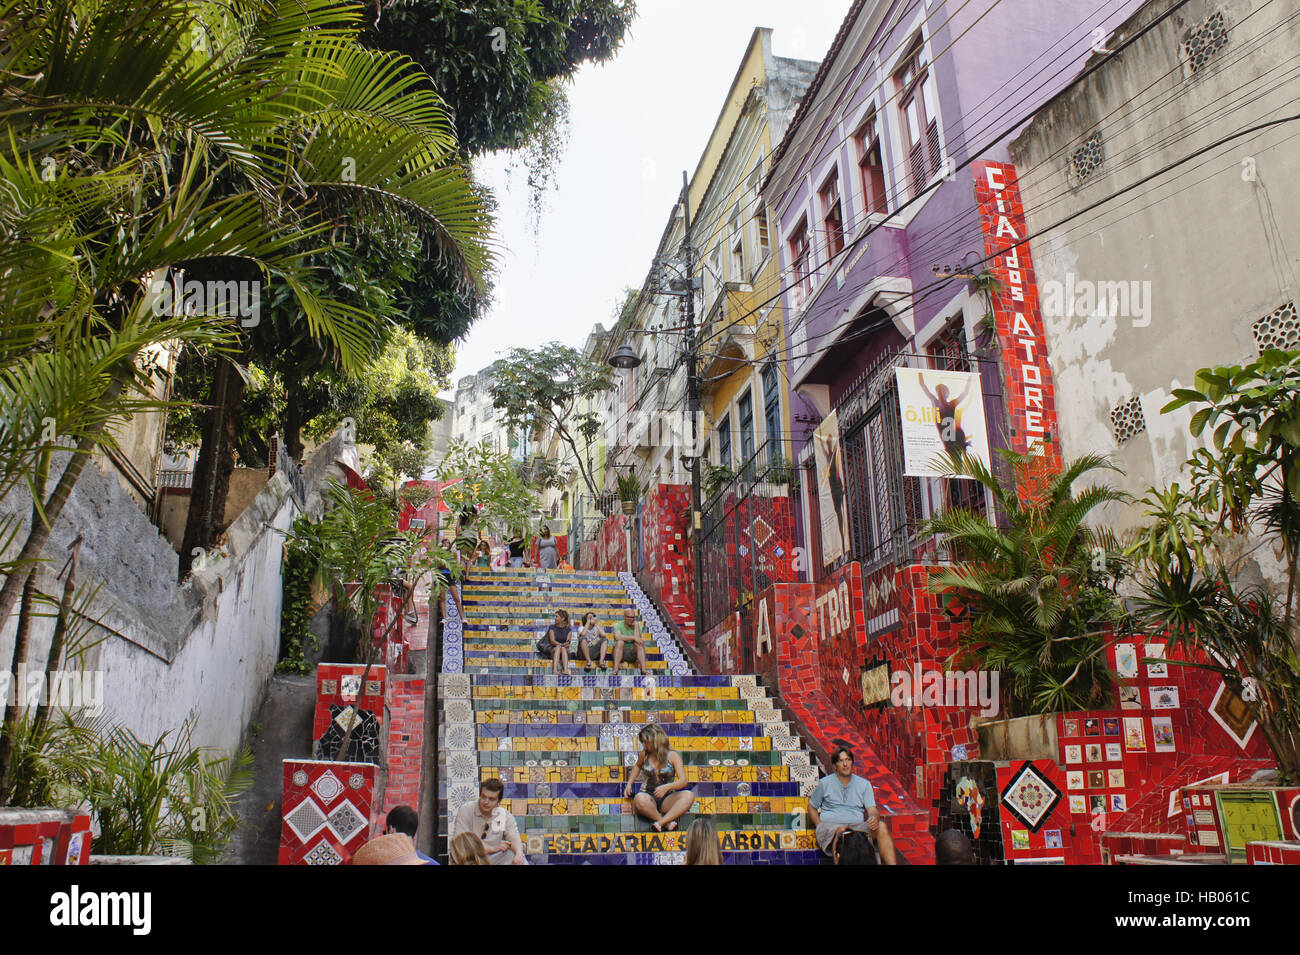 Rio De Janeiro, Lapa, Escadaria Selaronn Stockfoto